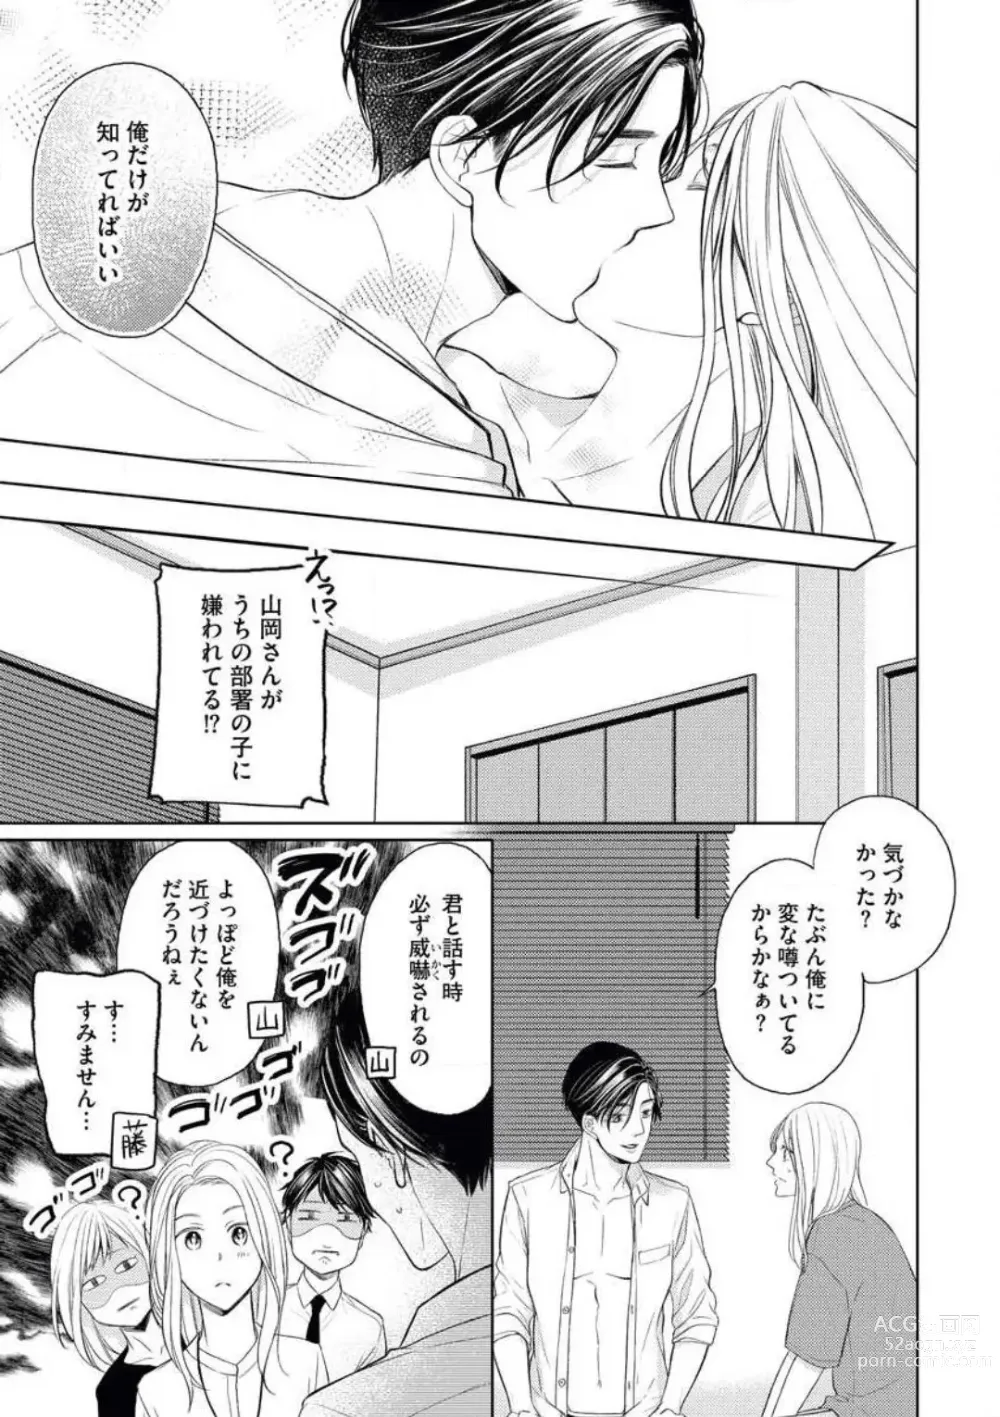 Page 31 of manga Mitsu Koi Maisonette